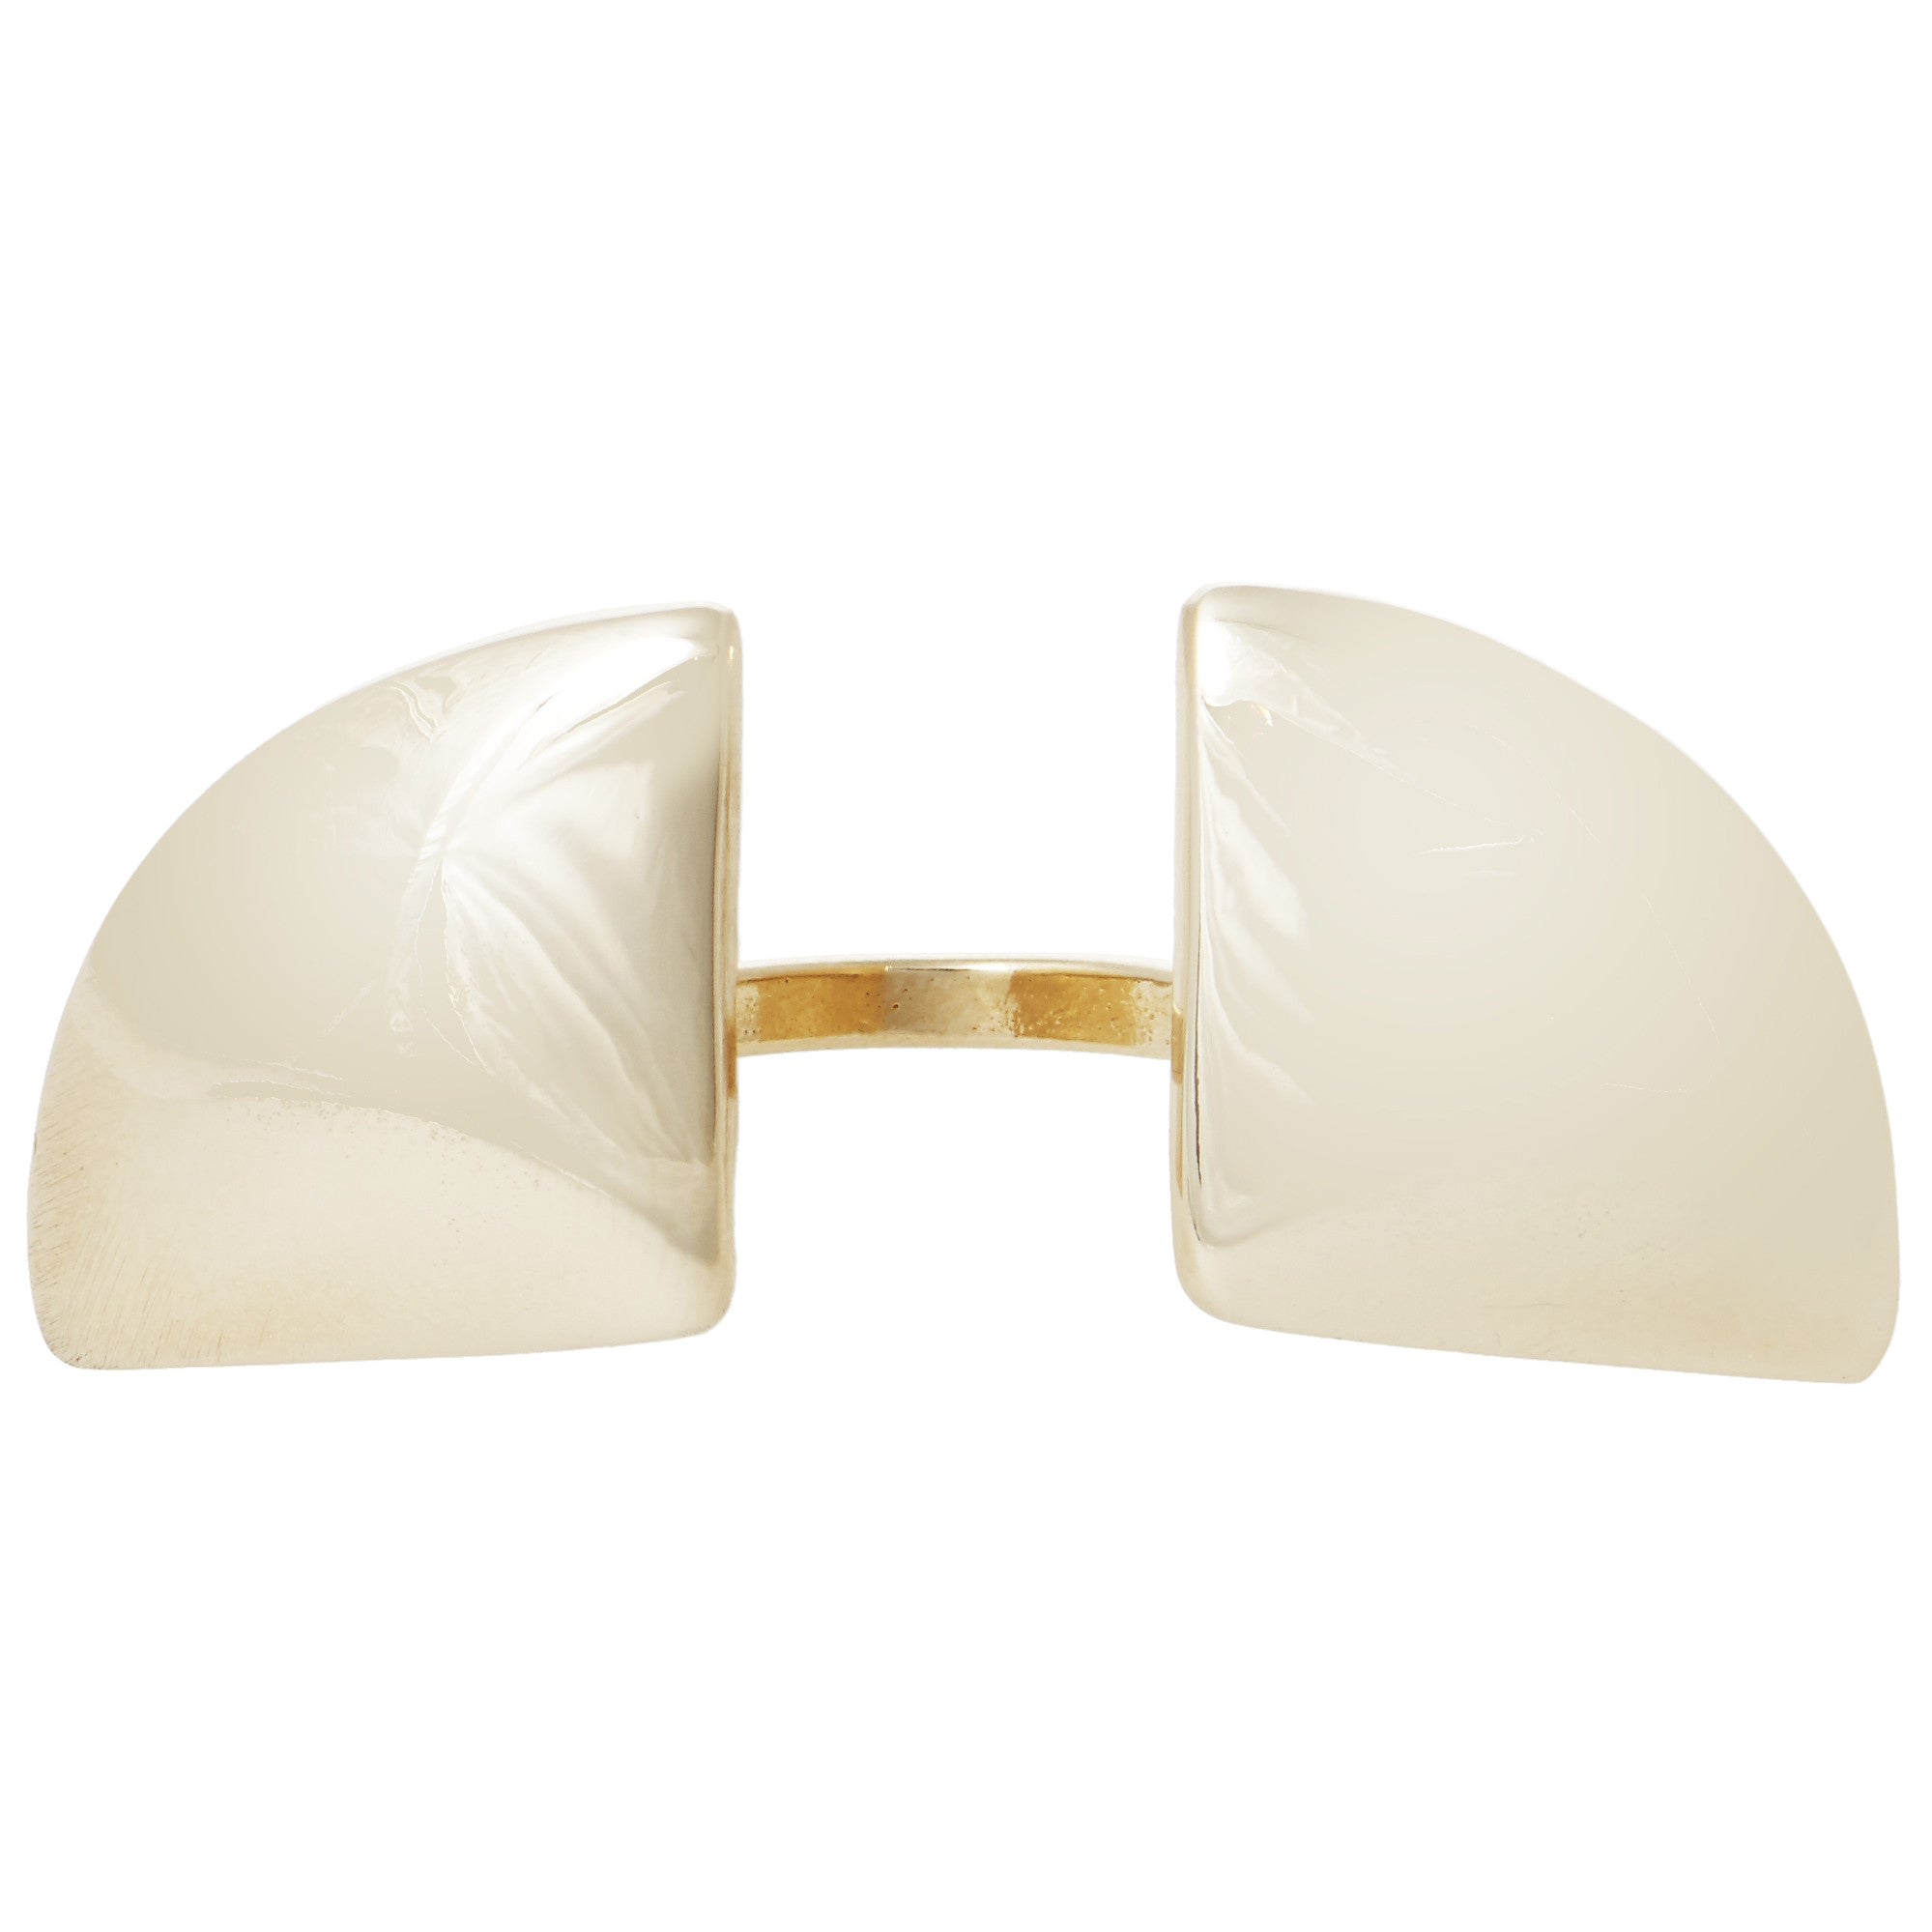 Castlecliff Women's Gold Quarter-sphere Ring In White